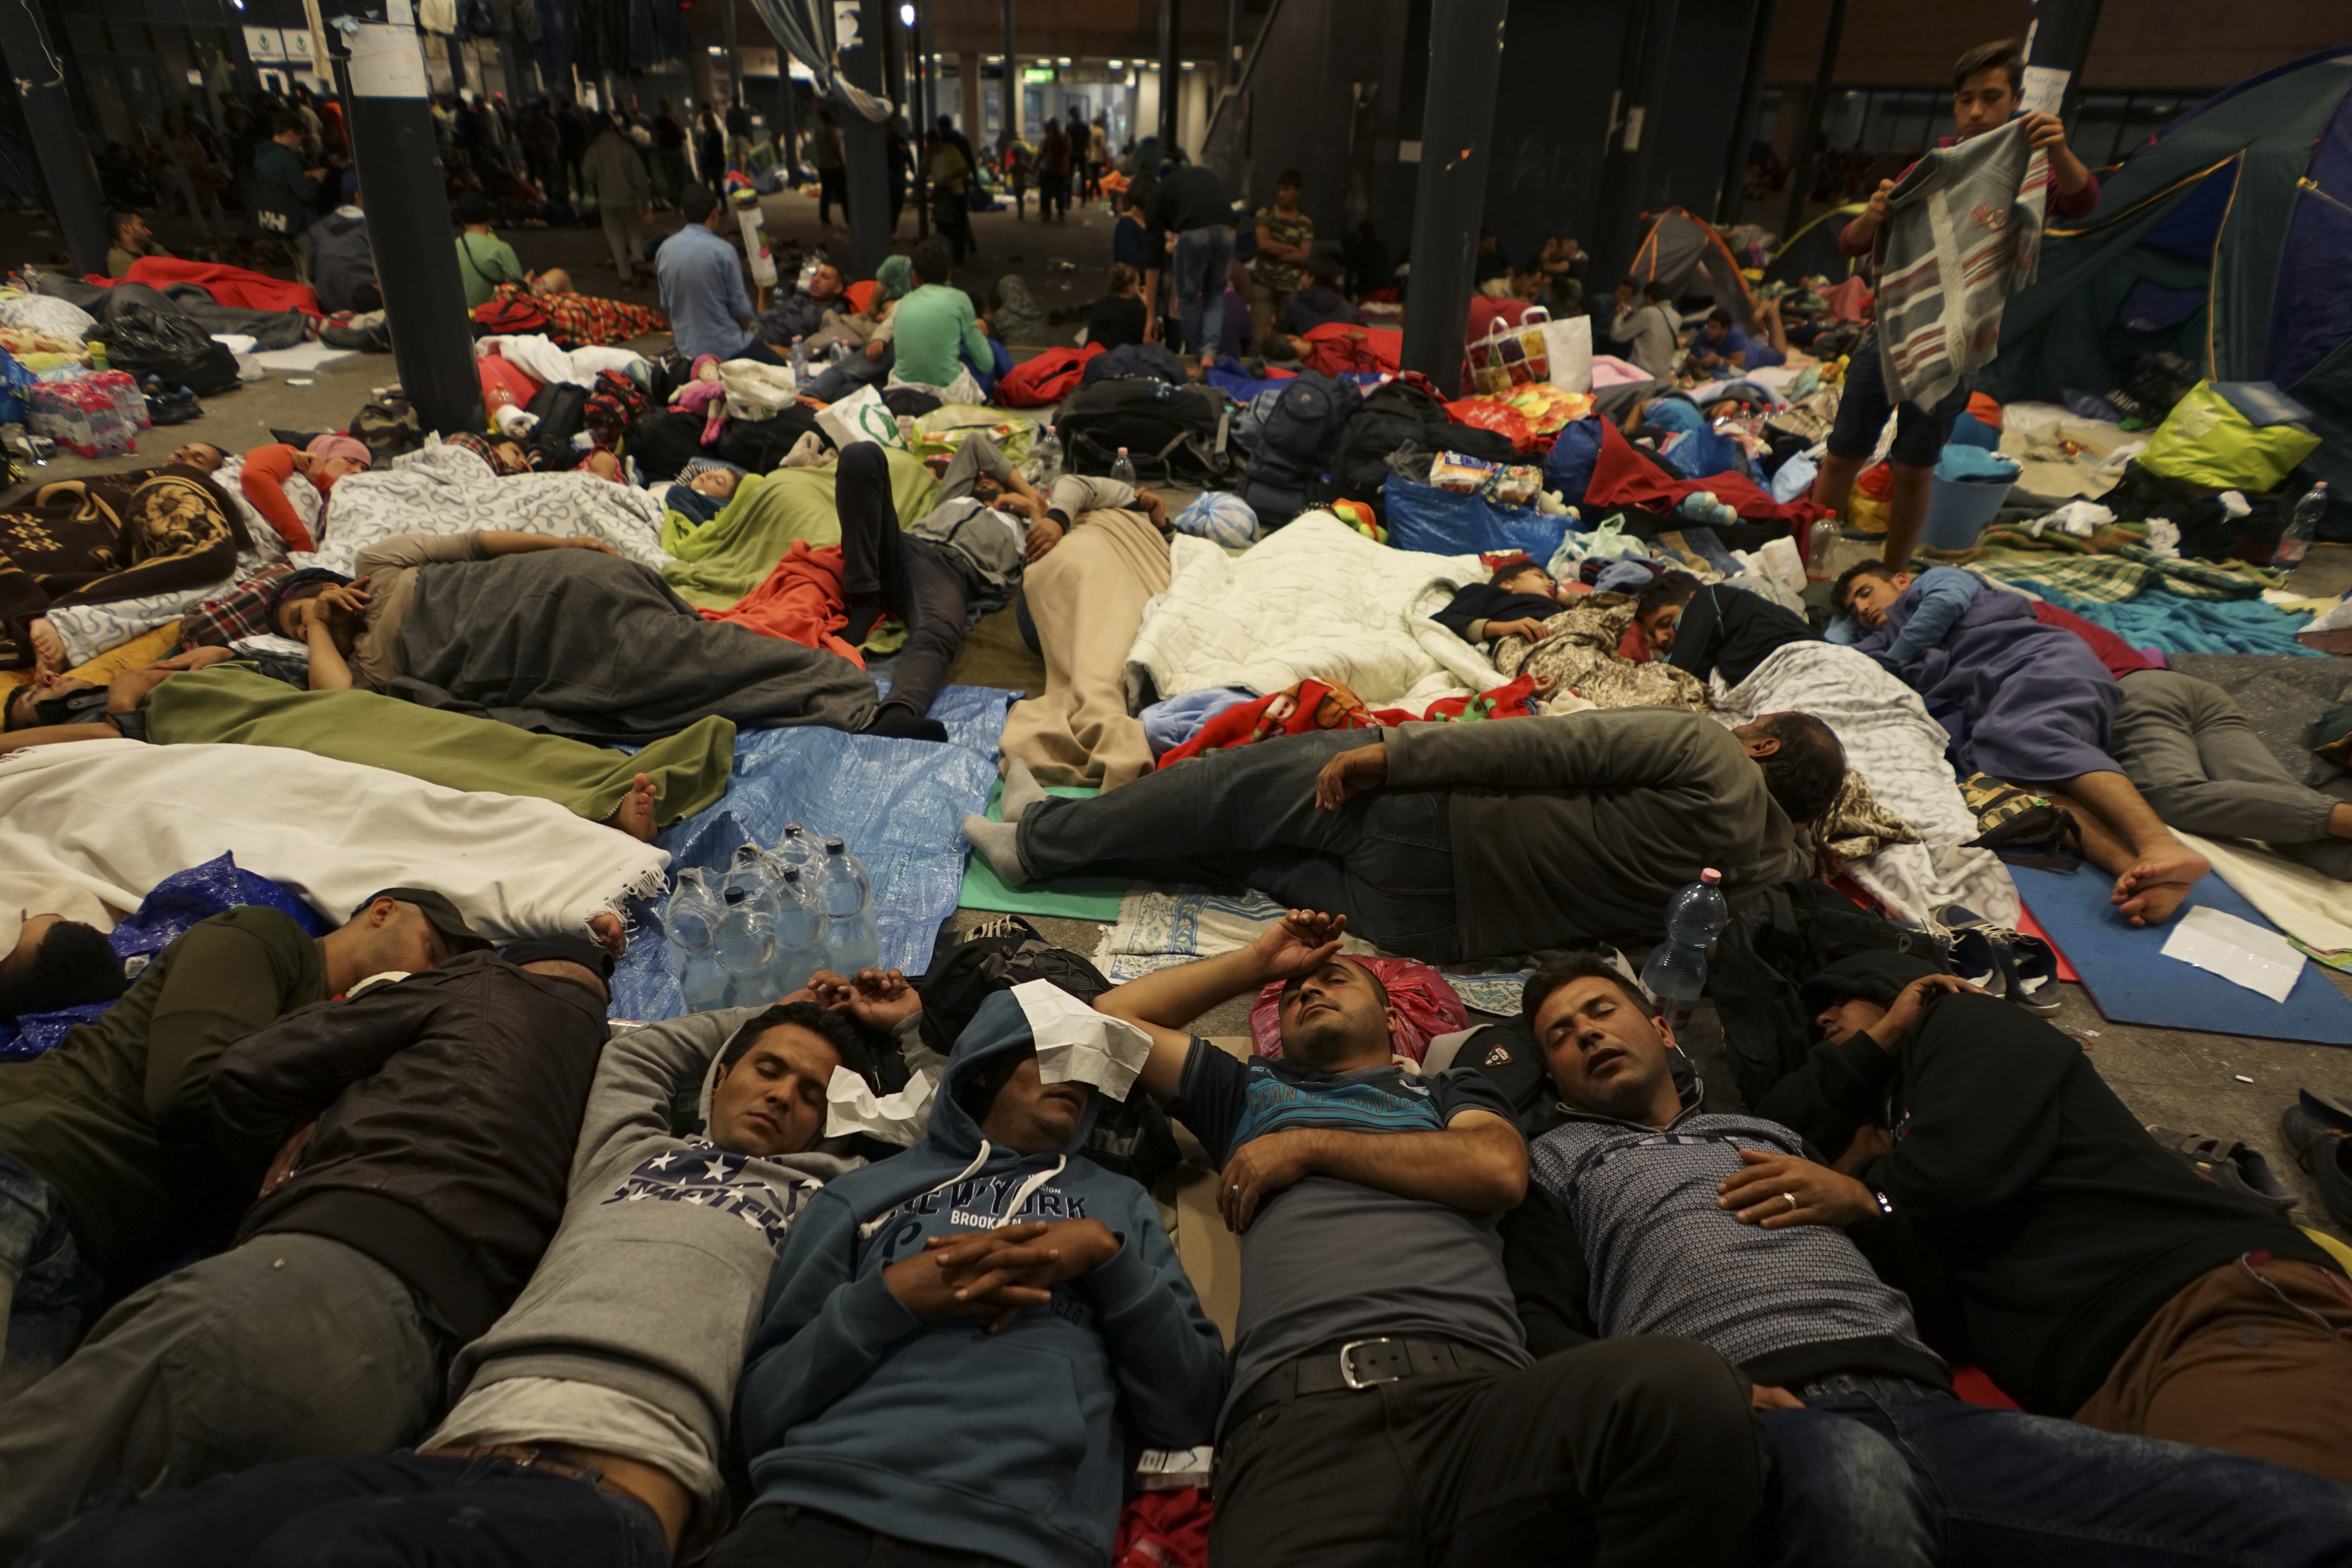 Mstyslav Chernov/Unframe - Syrian refugees having rest at the floor of Keleti railway station. Refugee crisis. Budapest, Hungary, Central Europe, 5 September 2015.